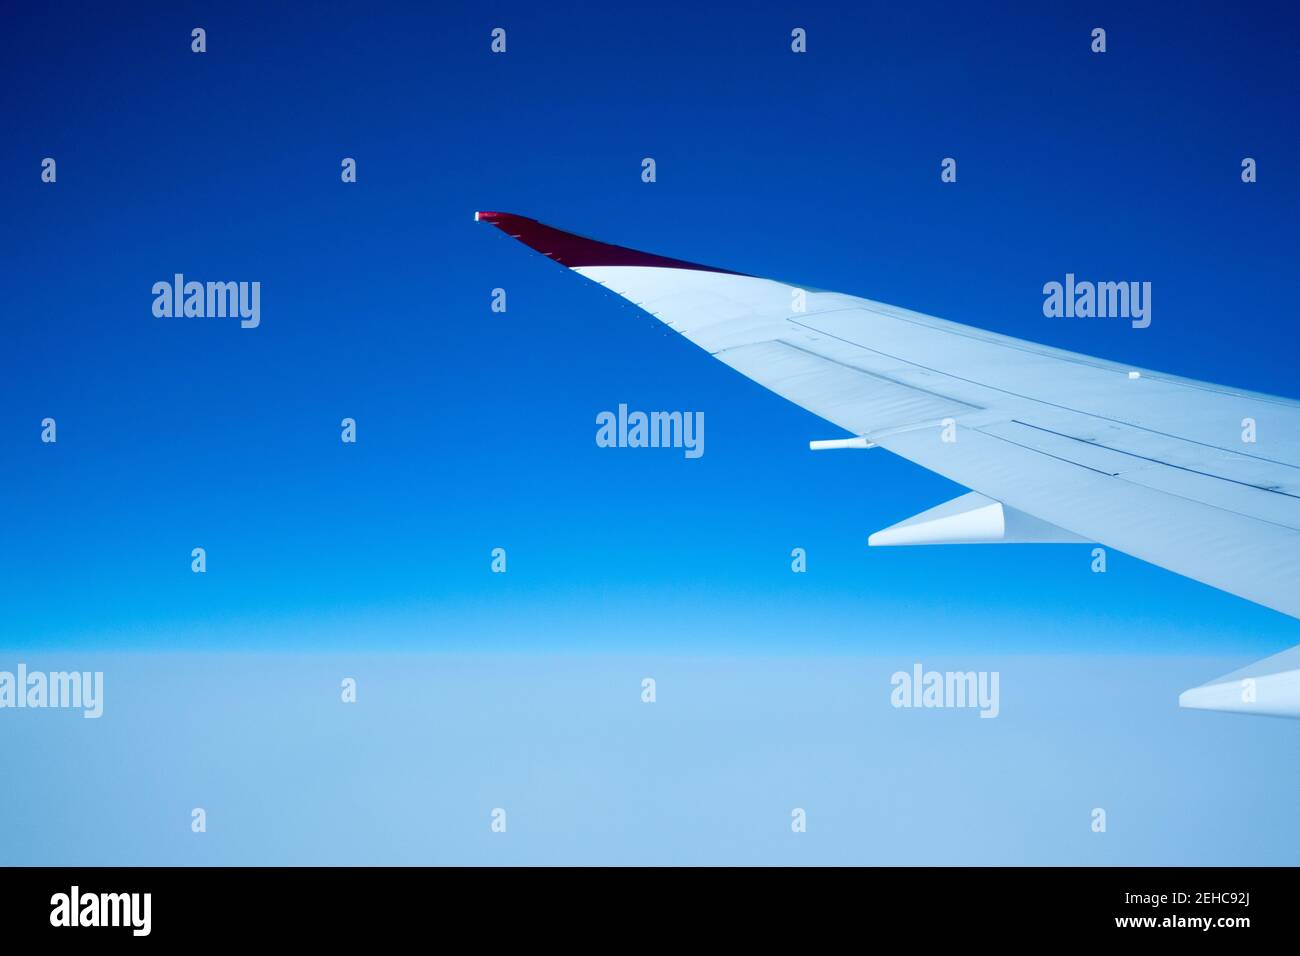 Concepto de viaje aéreo con ala de avión que se extiende en un blanco y el cielo azul Foto de stock